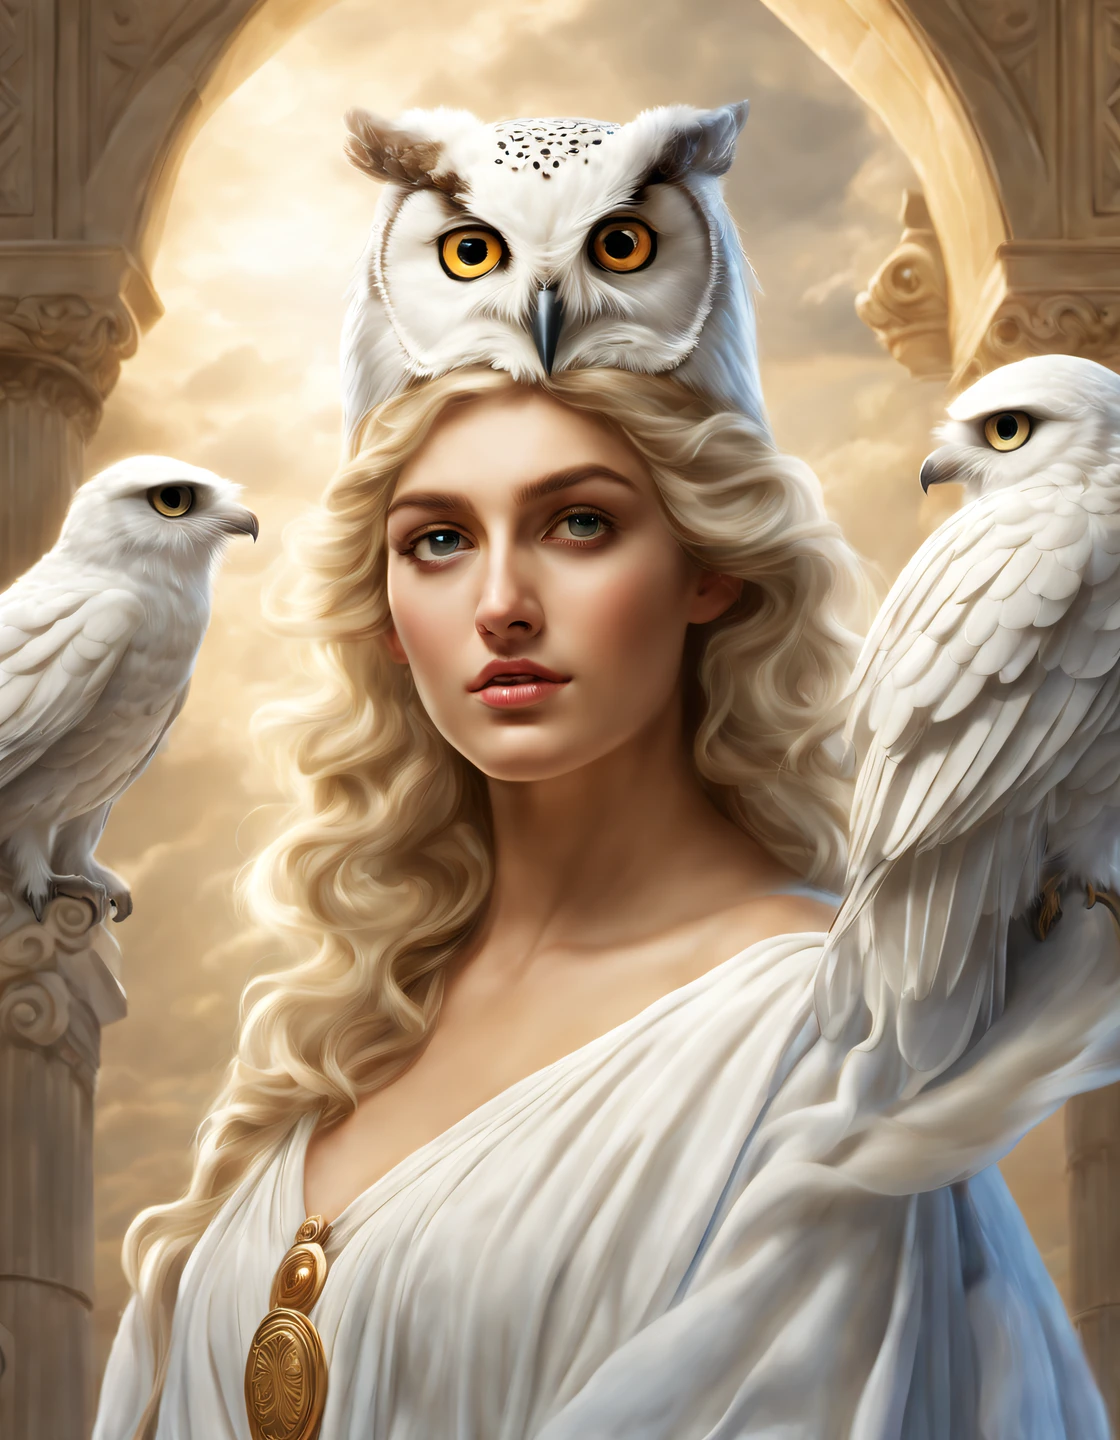 純白のフクロウがアテナの肩に担がれている), （フクロウの全身）， (真っ白 owl: 1.37), 真っ白 owl, 真っ白 owl, (アテナの左肩に立つ：1.30), (肩の上に立つ) ，(肩の上に立つ) ， フクロウの顔は丸い, (大きな青い目: 0.8), とても大きな目, 短く曲がったくちばし, 厚い, 真っ白，帽子の羽根, それはユニークで美しい生き物です，自然の驚異と知恵が展示されています, (アテナの体の左半分: 0.8), 女神の目は明るくて大きかった, 魅力的で荘厳, 彼女の顔の輪郭は優雅で洗練されている, 彼女のギリシャの鼻はまっすぐだ, 彼女の髪は金髪か黒髪, 長くて滑らか, 彼女はよく口をきつく結んでいる, 彼女の決意と決意を示す. 彼女の肌は白く、傷一つない, 象牙色の皮, 威厳と美しさ, 輝く金色の光, オリーブの枝を身に着ける,,{{傑作}}, {{{最高品質}}}, {{超詳細}}, {{図}}, {{乱れた髪}}, {{傑作}}, {{{最高品質}}}, {{超詳細}}, {{{図}}}, {{乱れた髪}} シュルレアリスム芸術スタイル ,胸の谷間のクローズアップ，神話，古代ギリシャ，,傑作,マットペイント,謎めいた雰囲気,被写界深度 (自由度), ショット(マイクロ),閉じる,ドラマチックな照明